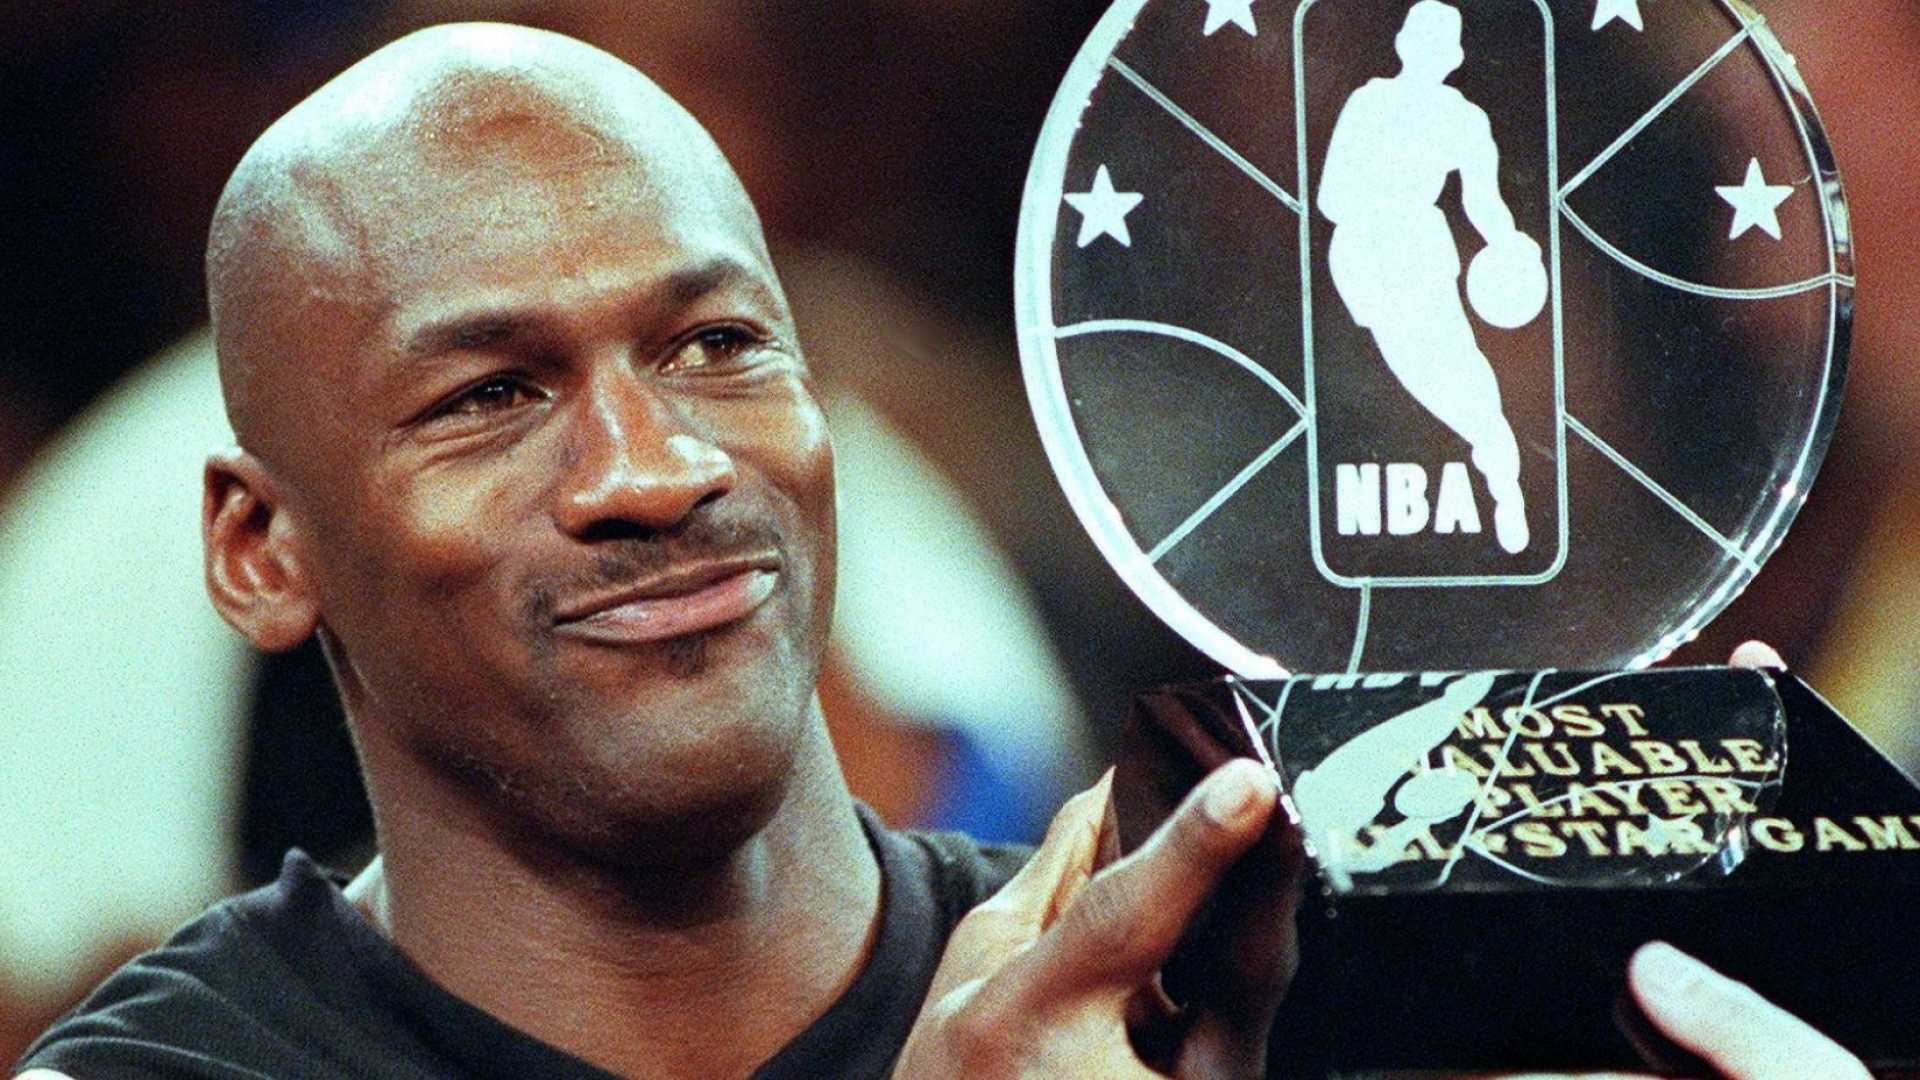 leadership lessons from Michael Jordan